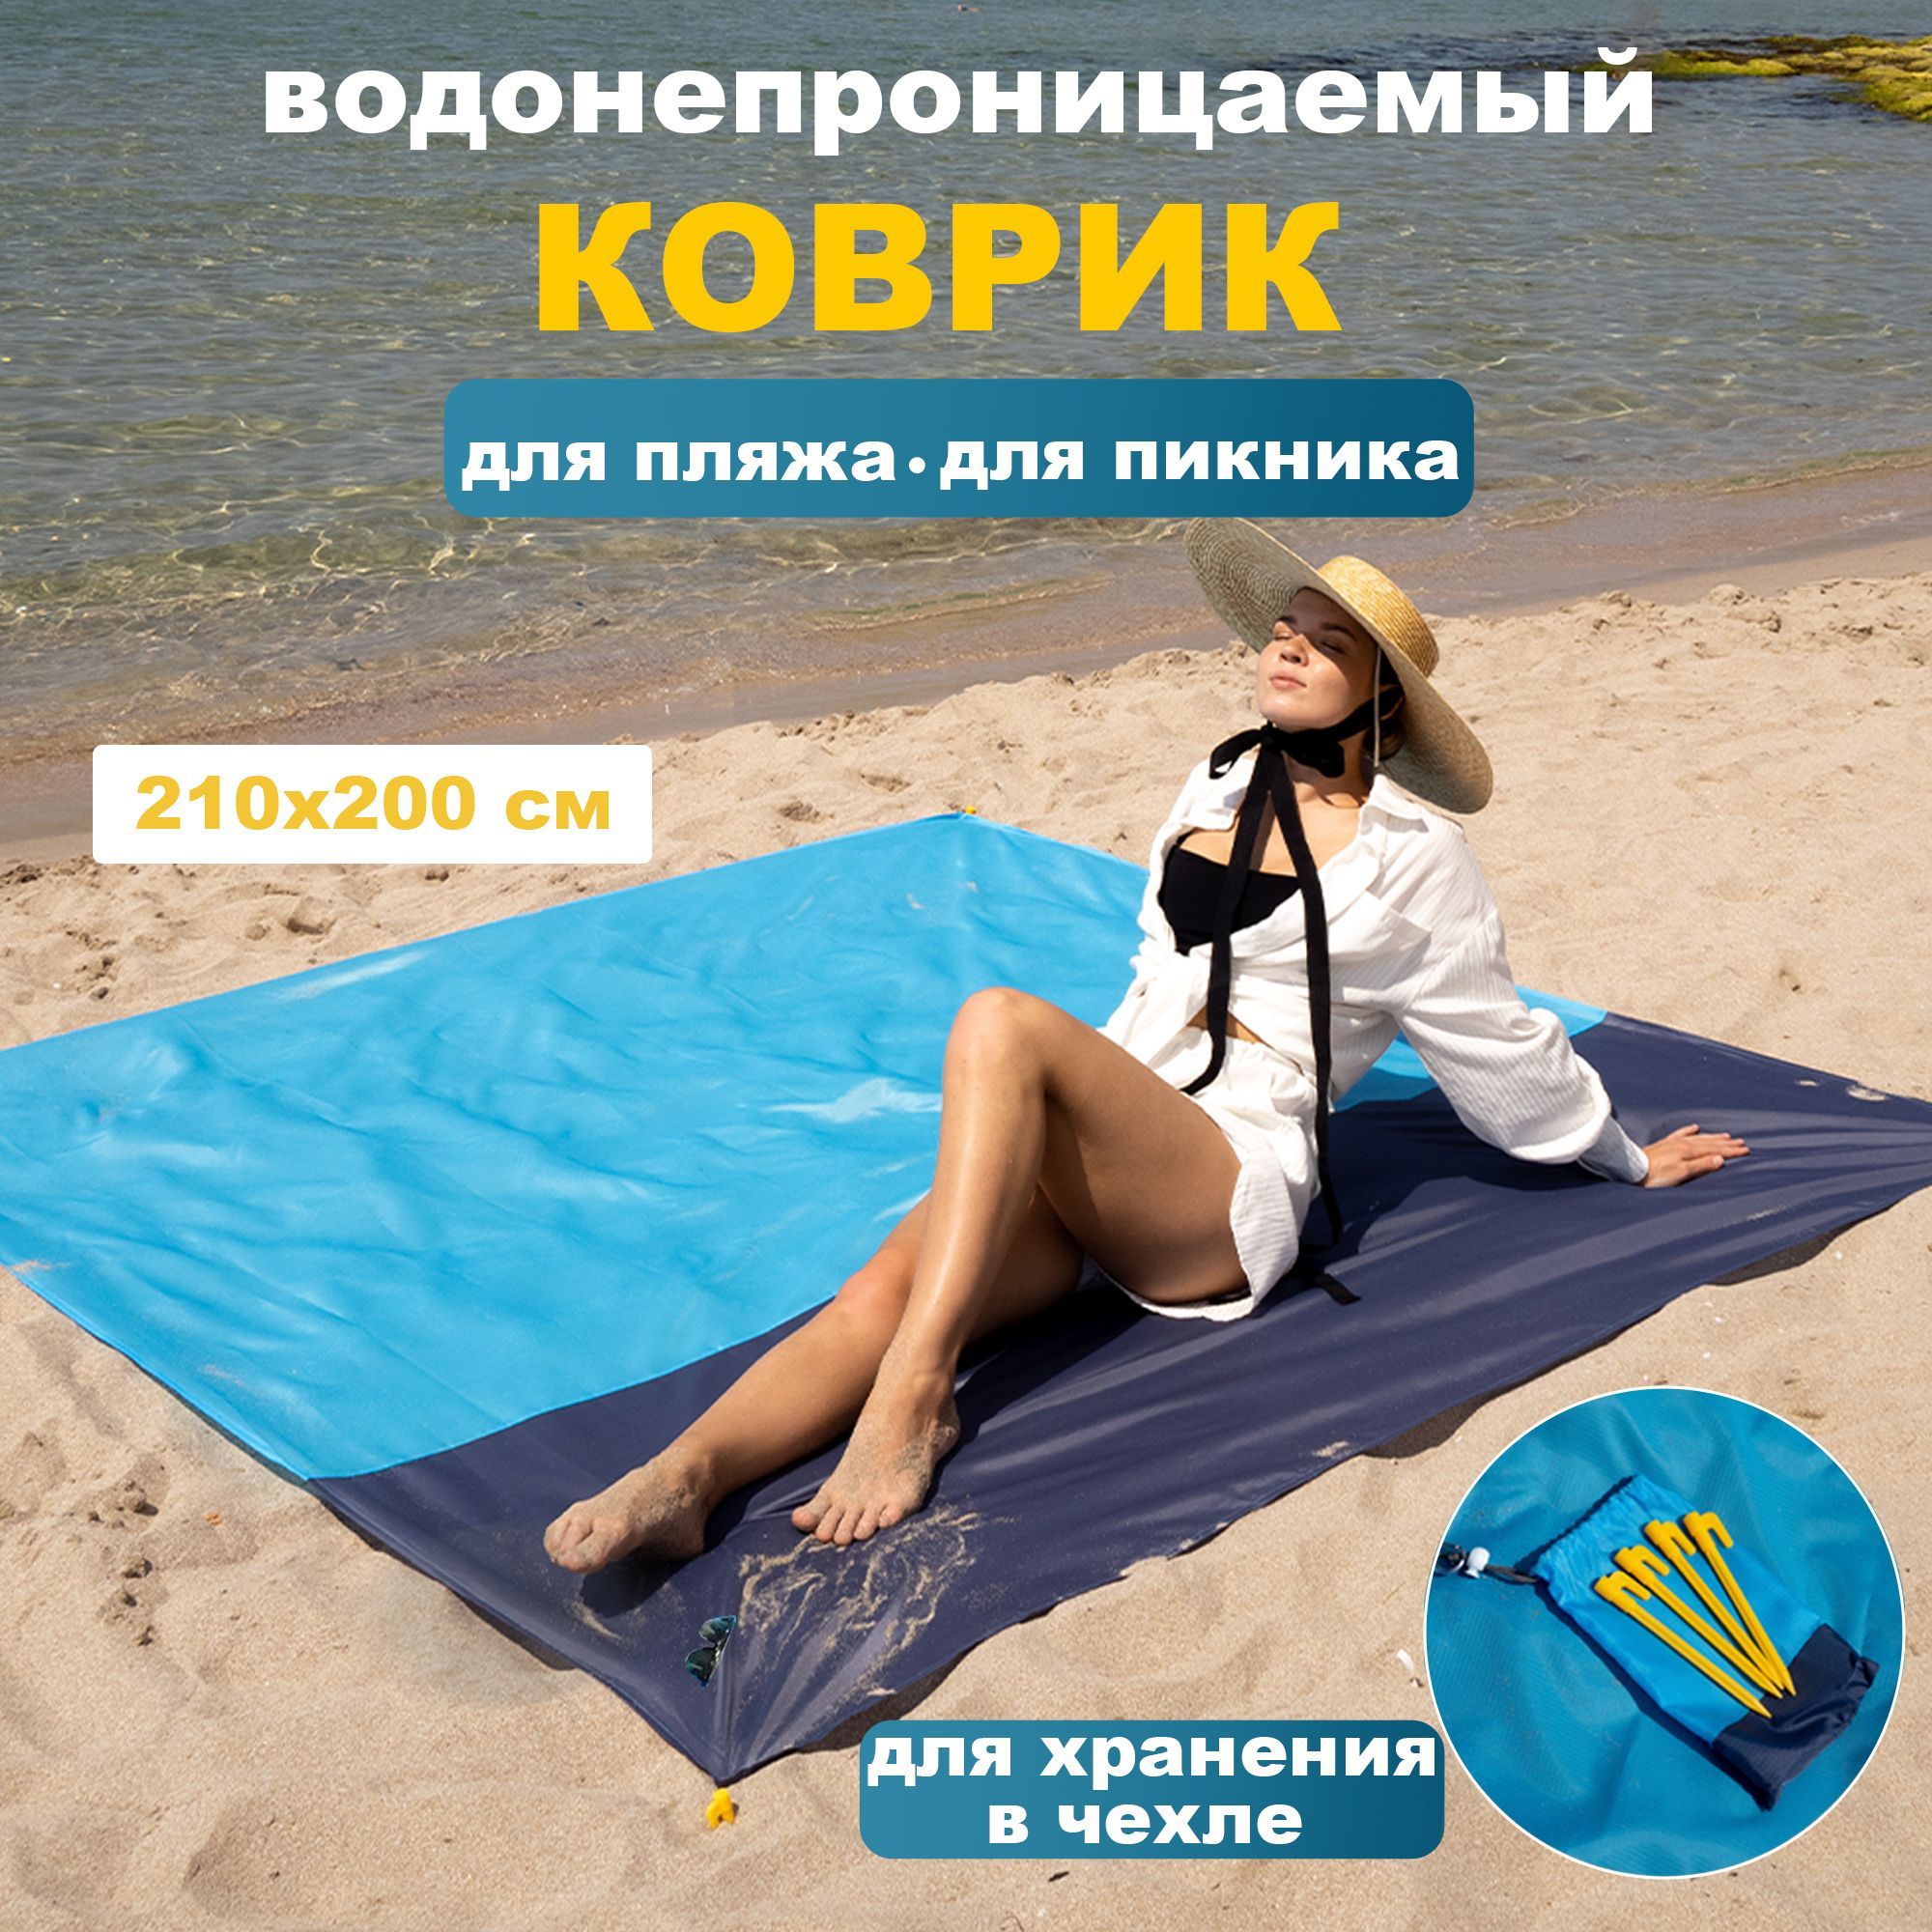 Большой пляжный коврик для пикника 210 на 200